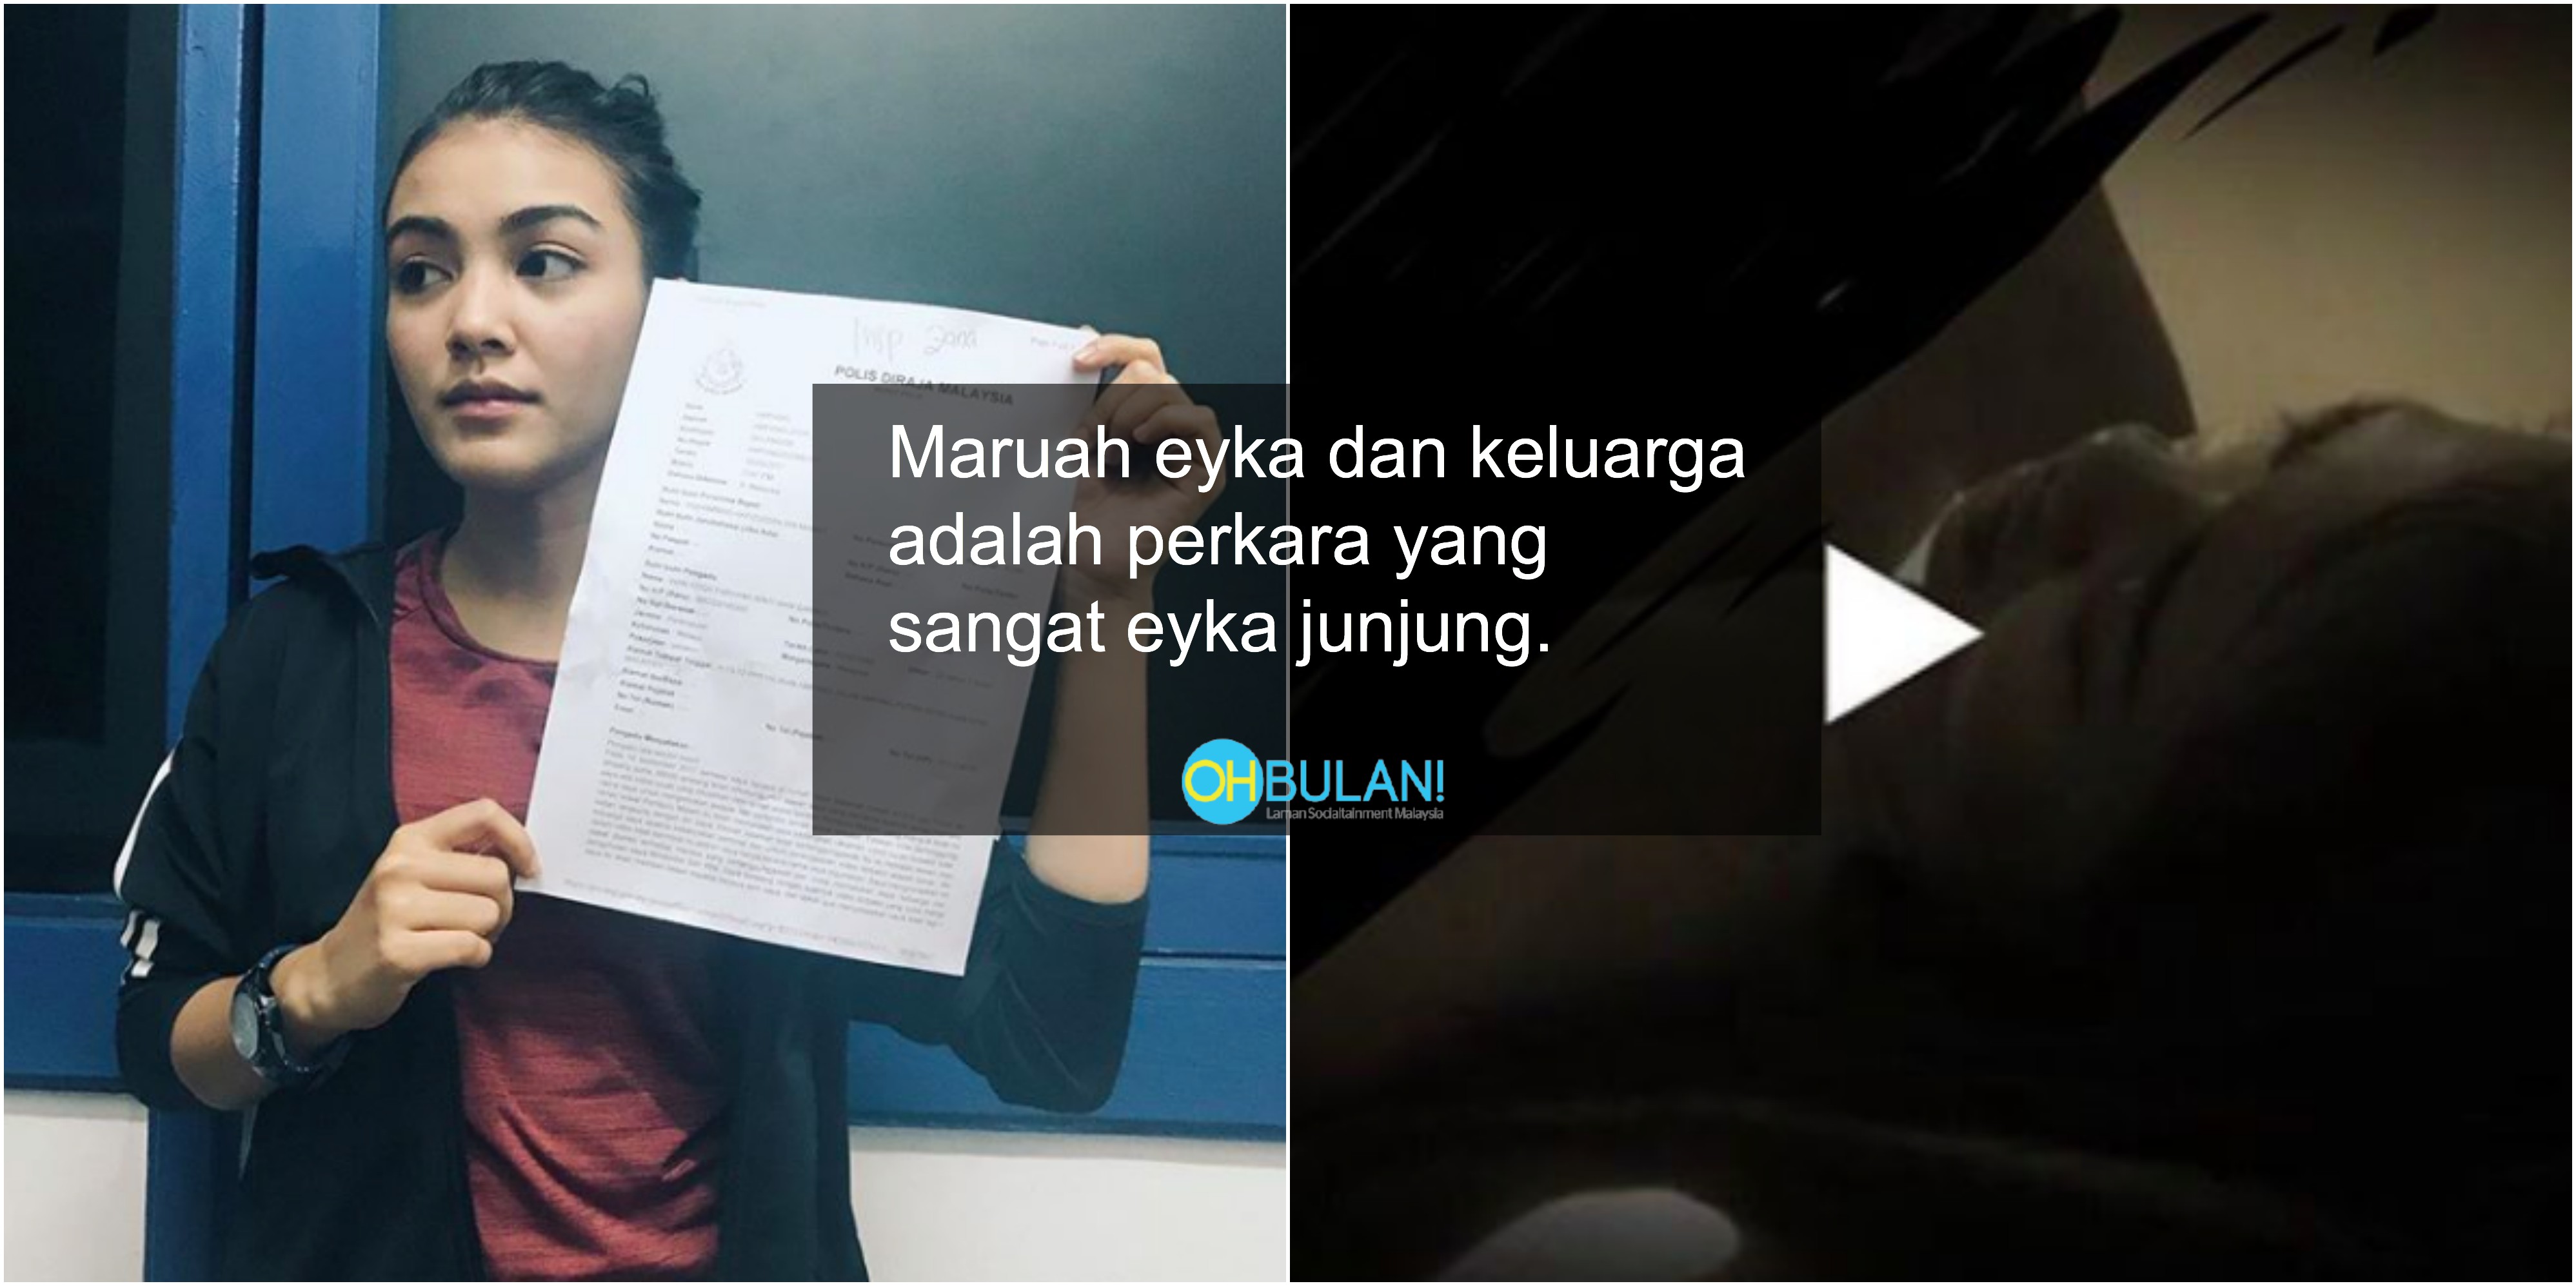 ‘Jangan Main-Main Dengan Maruah’ – Kontroversi Video Lucah, Eyka Farhana Berang